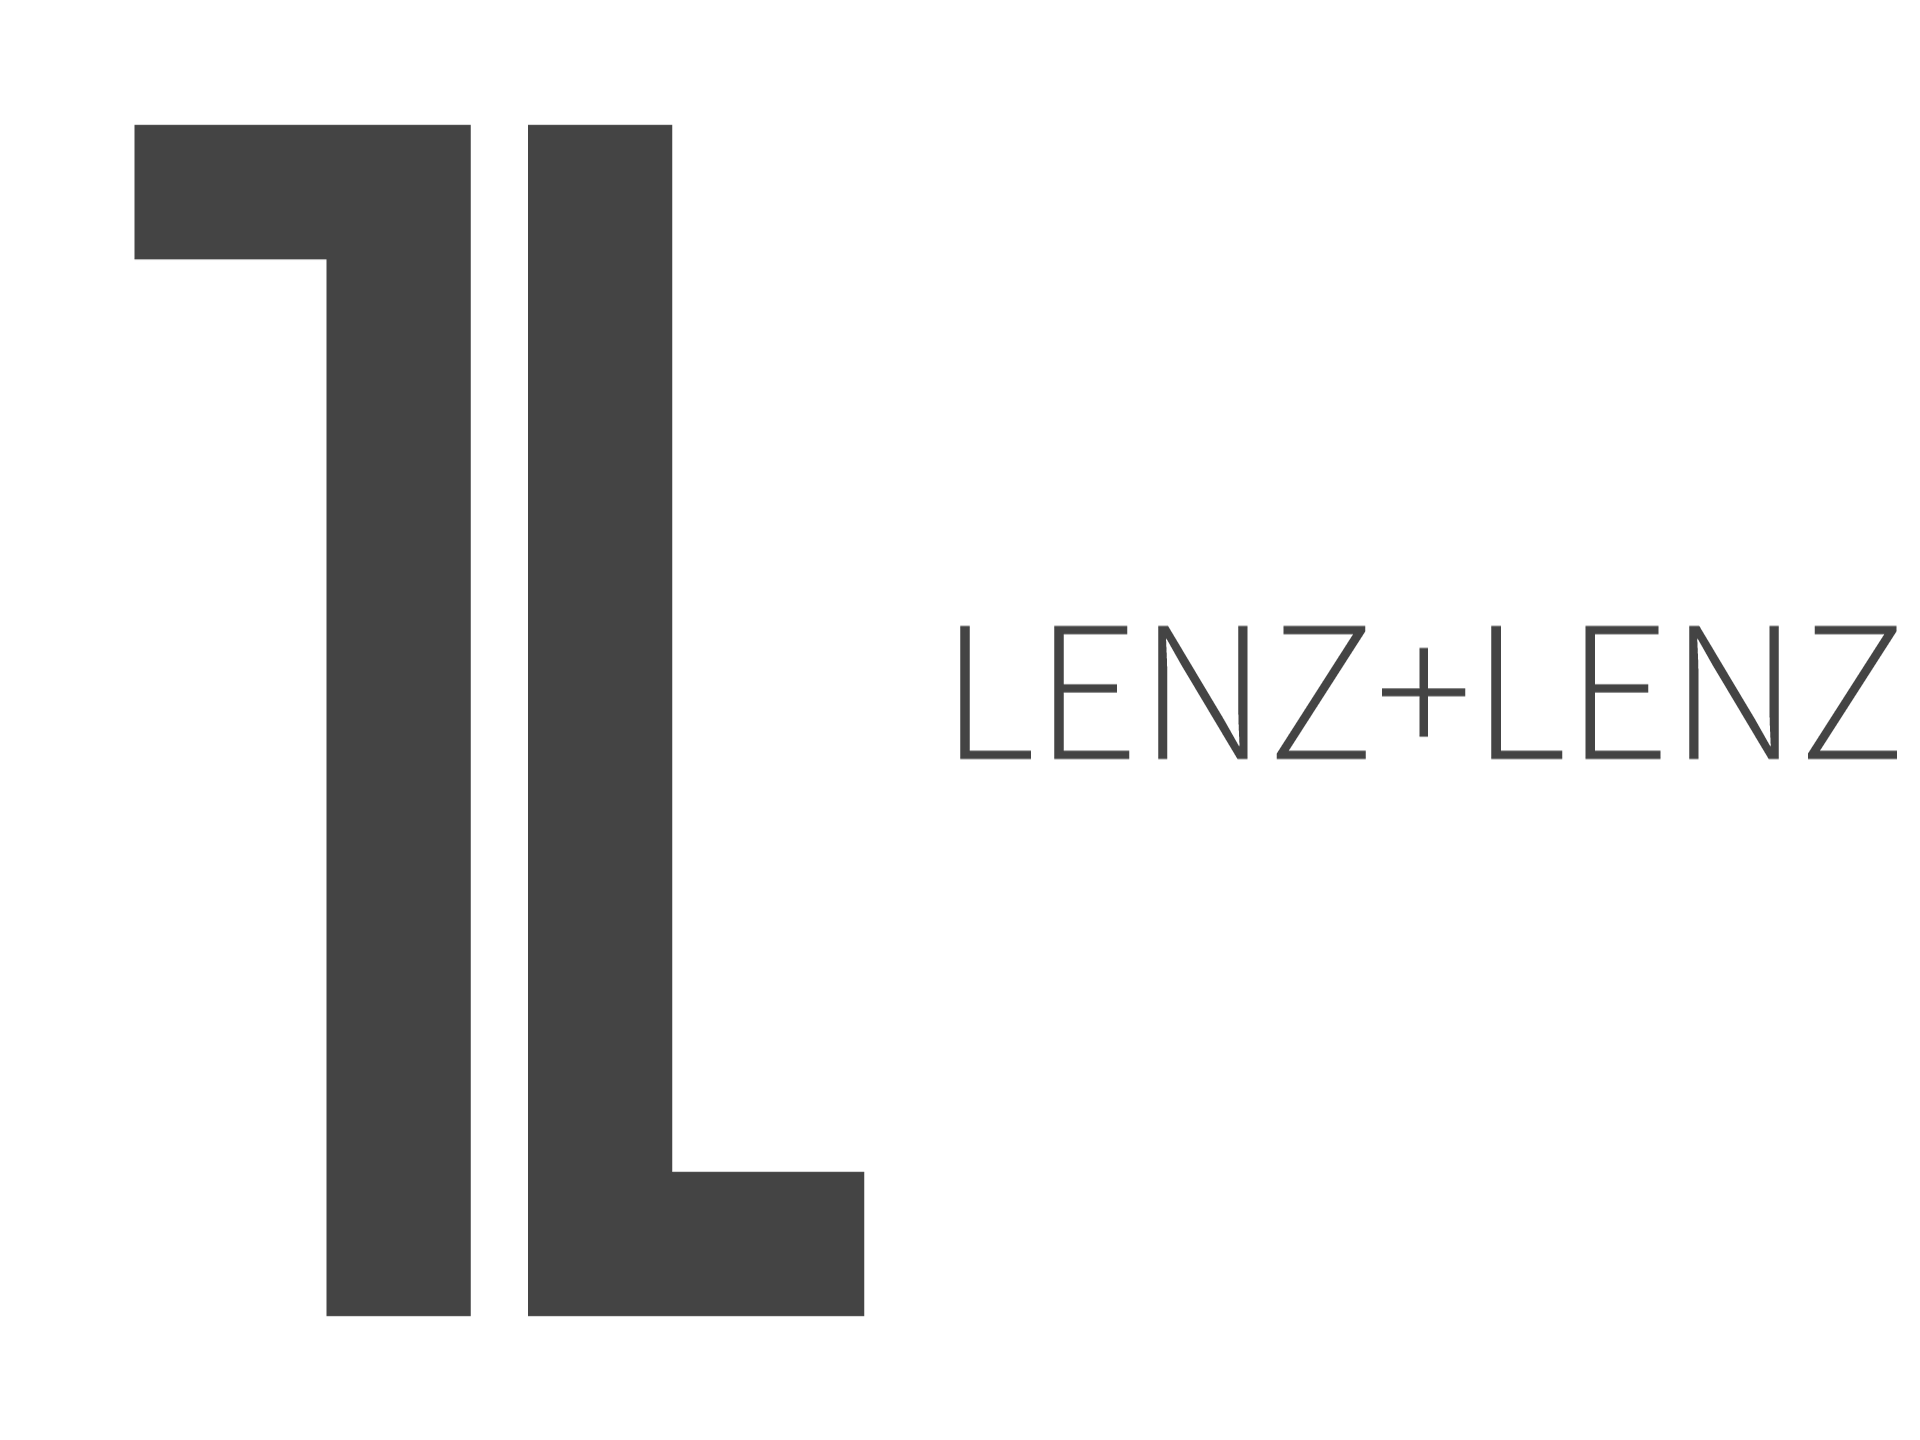 LENZ+LENZ